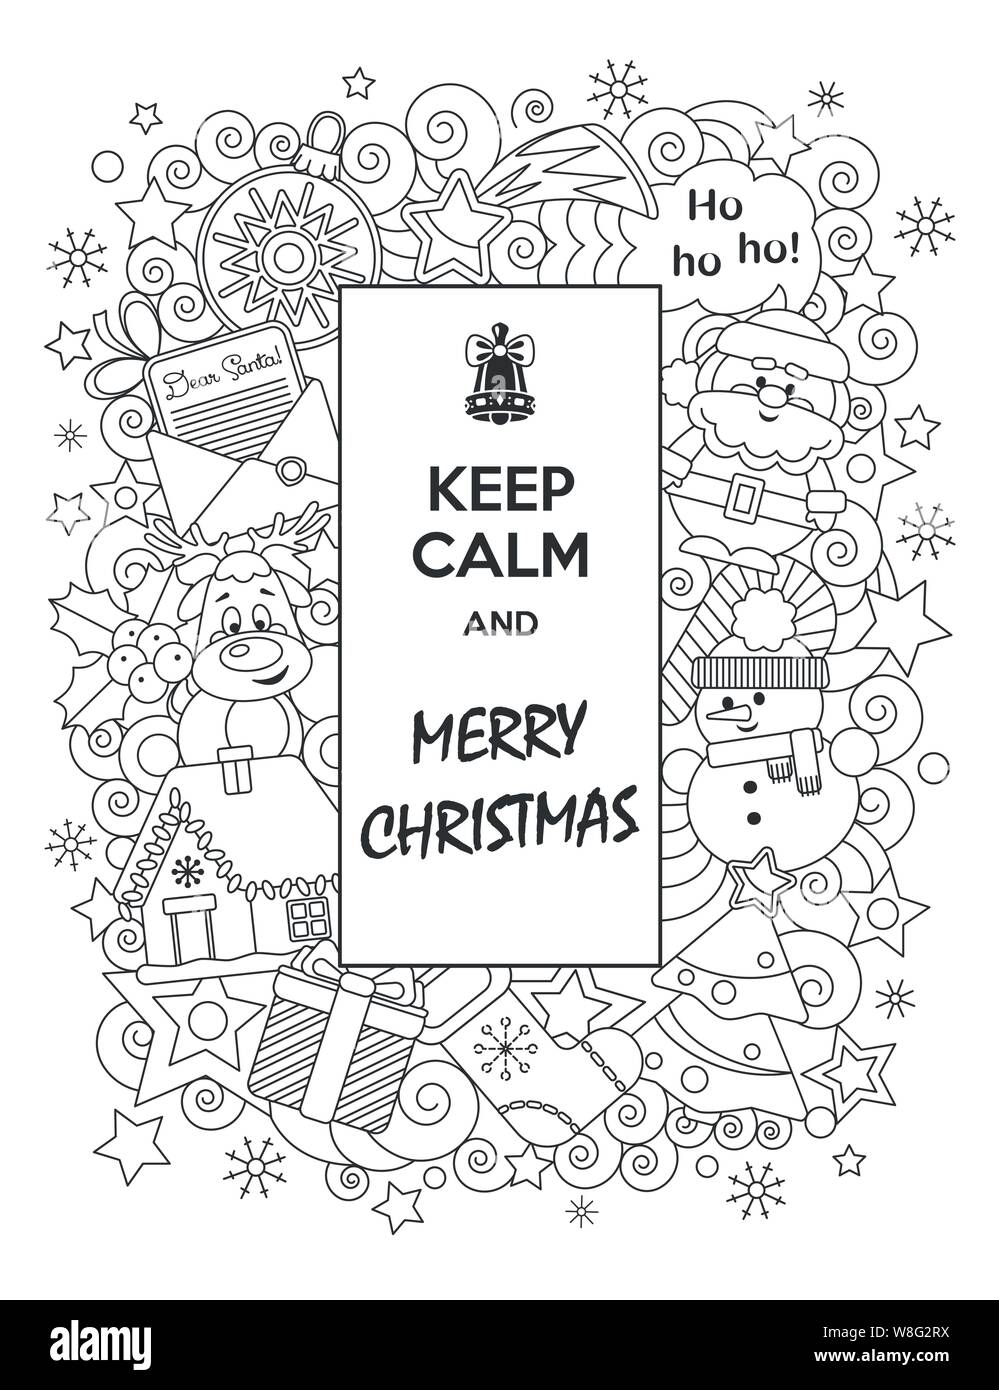 Frohe Weihnachten. Grußkarte Ruhige und fröhliche Weihnachten mit lustigen Cartoon Buchstaben halten. Vector Illustration. Doodles Stil. Stock Vektor